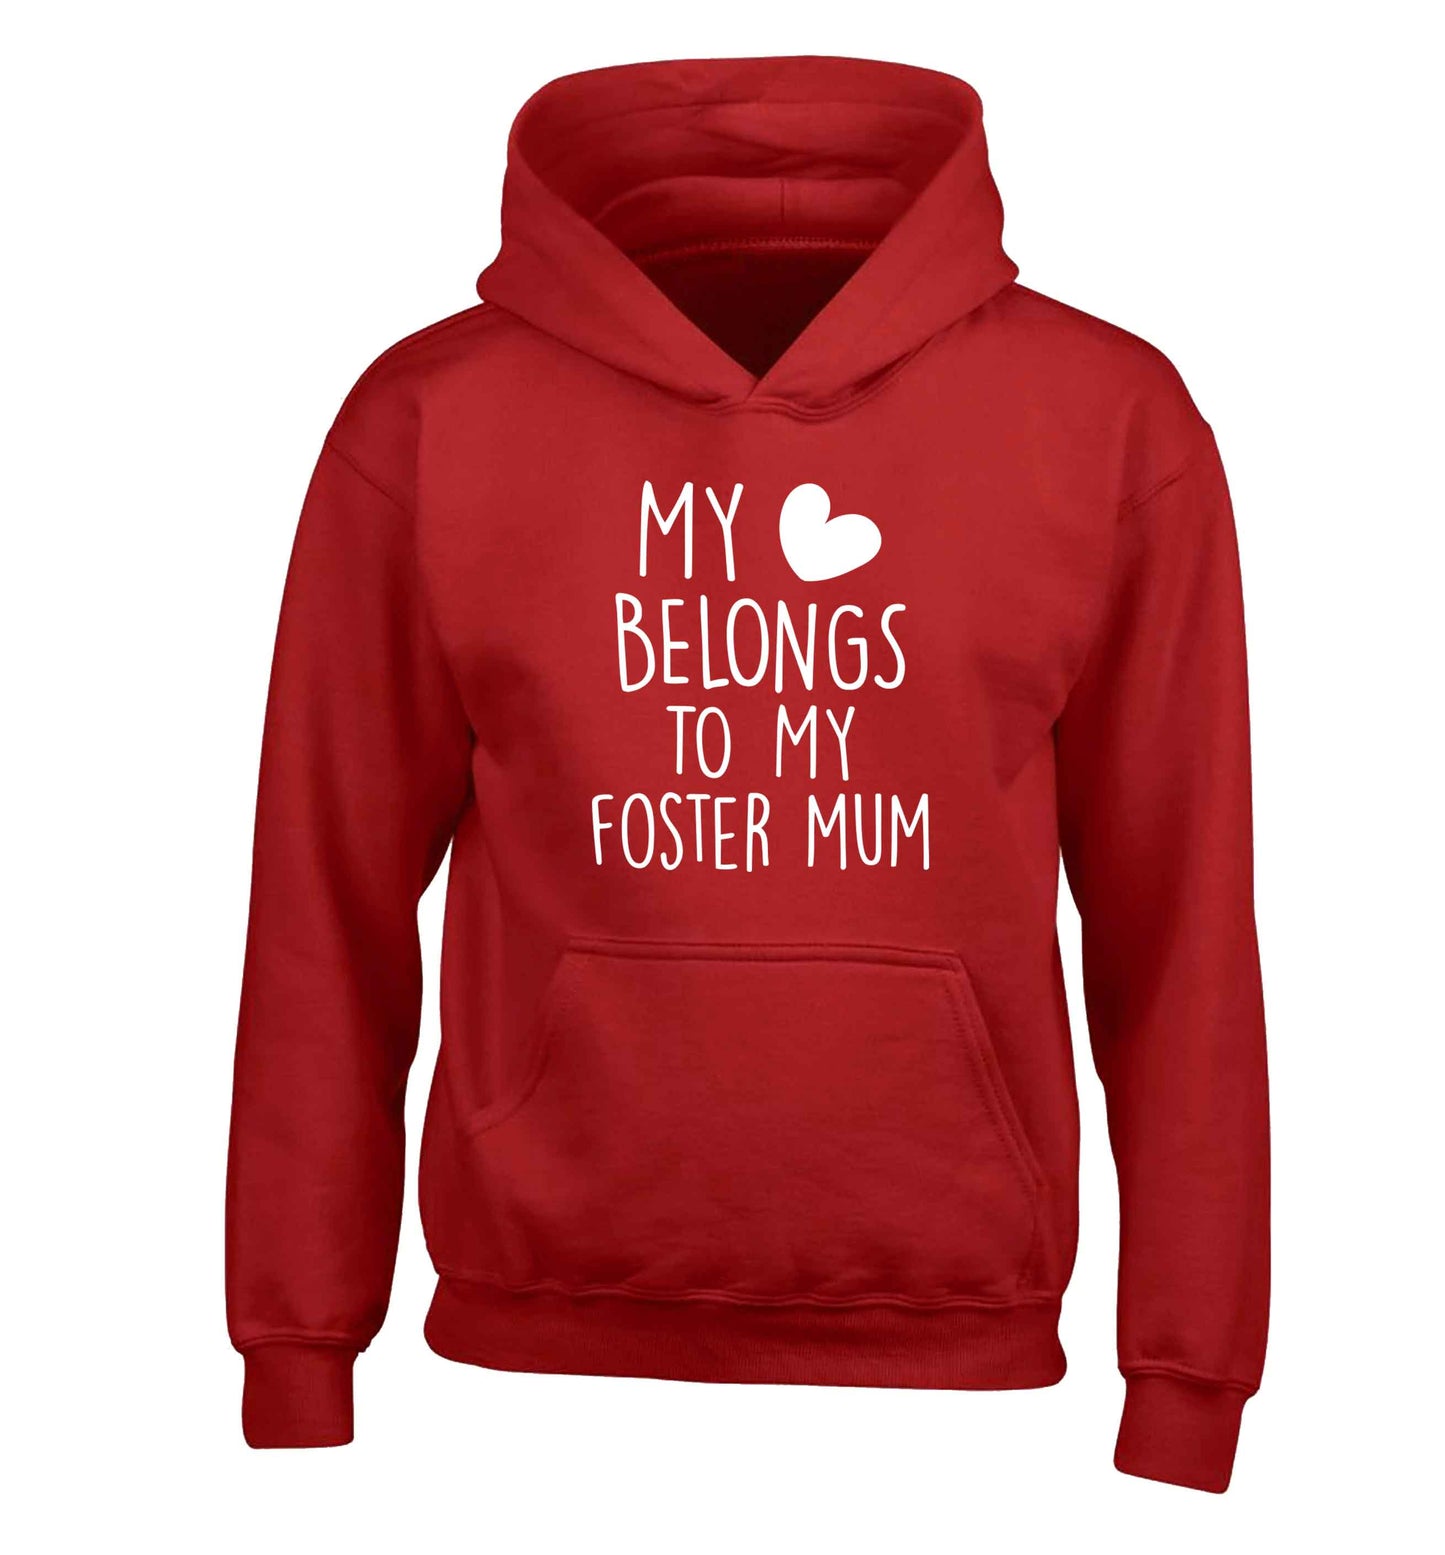 My heart belongs to my foster mum children's red hoodie 12-13 Years